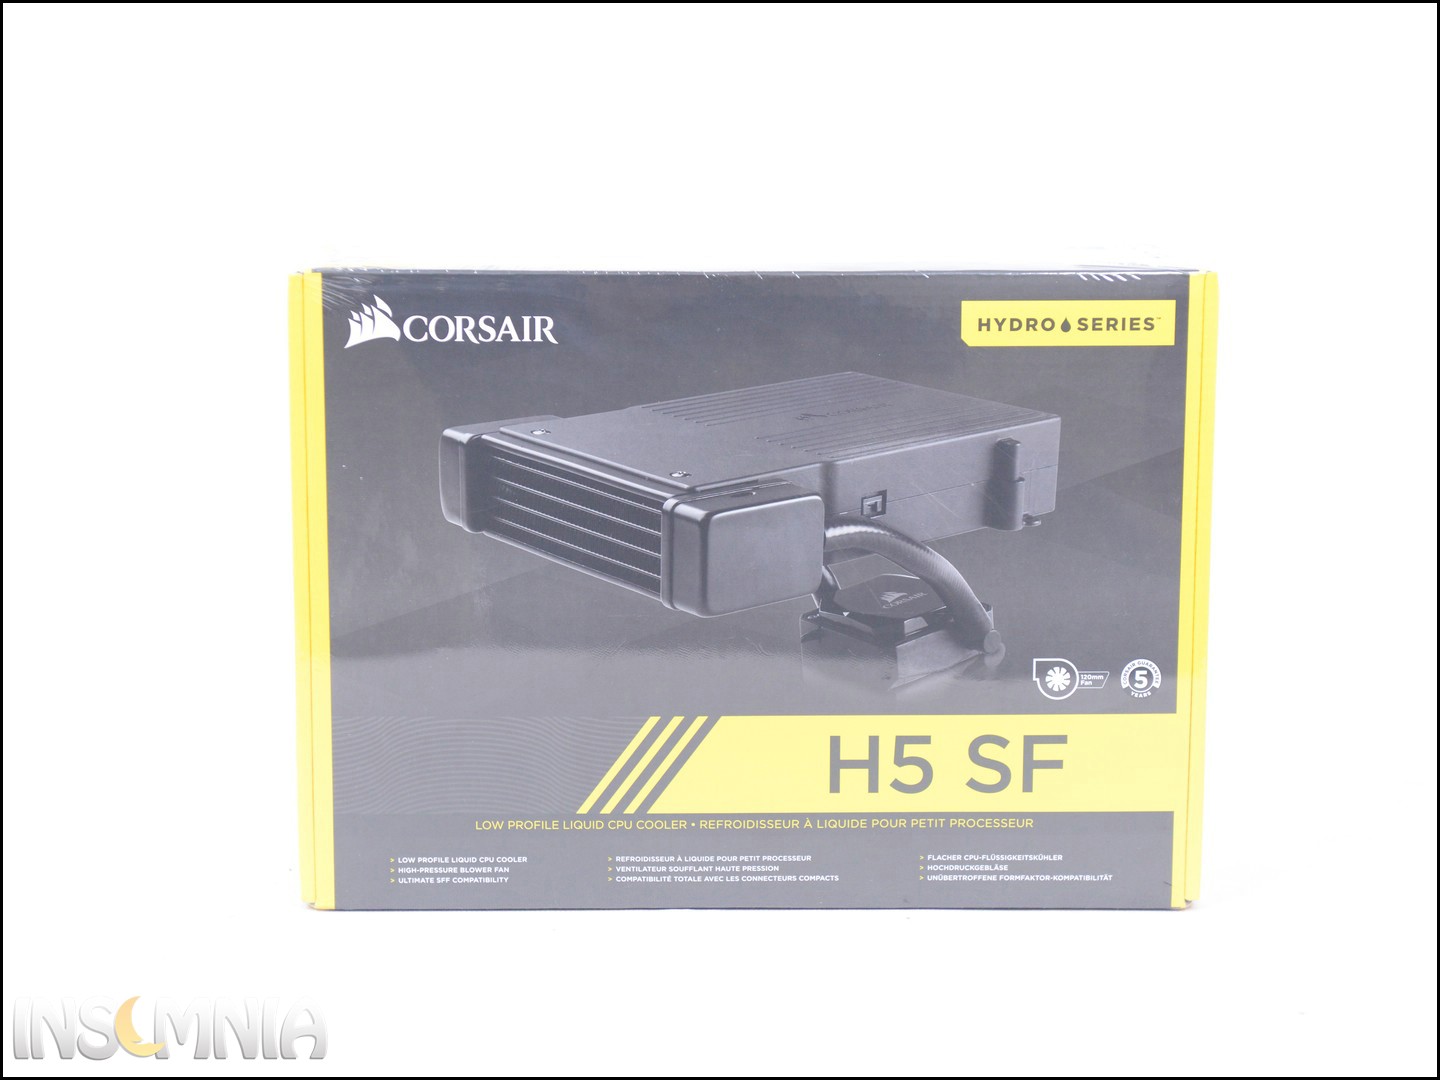 Corsair H5 SF